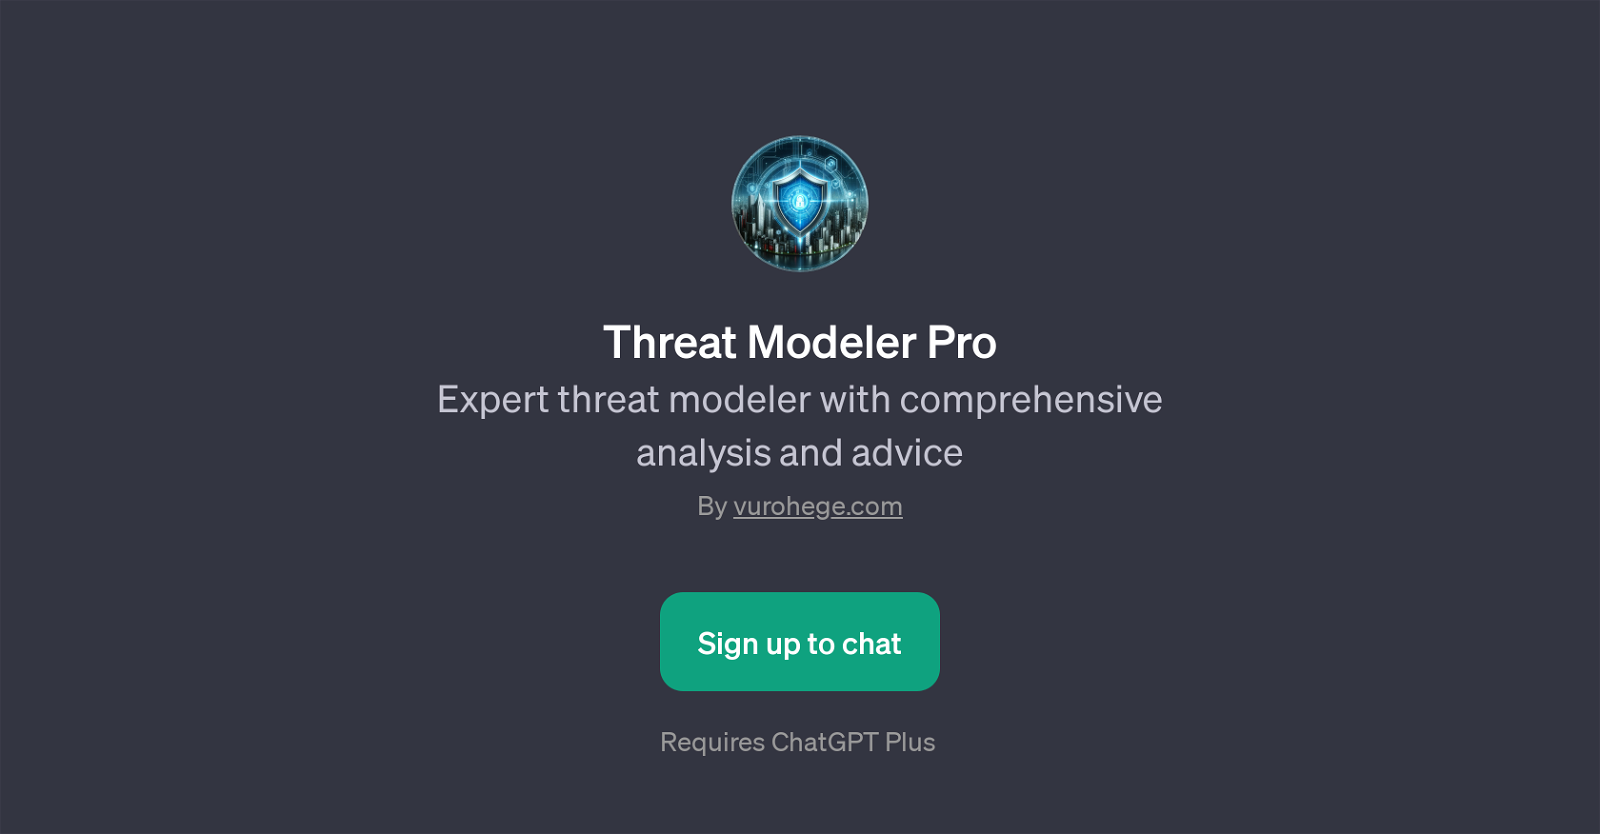 Threat Modeler Pro website